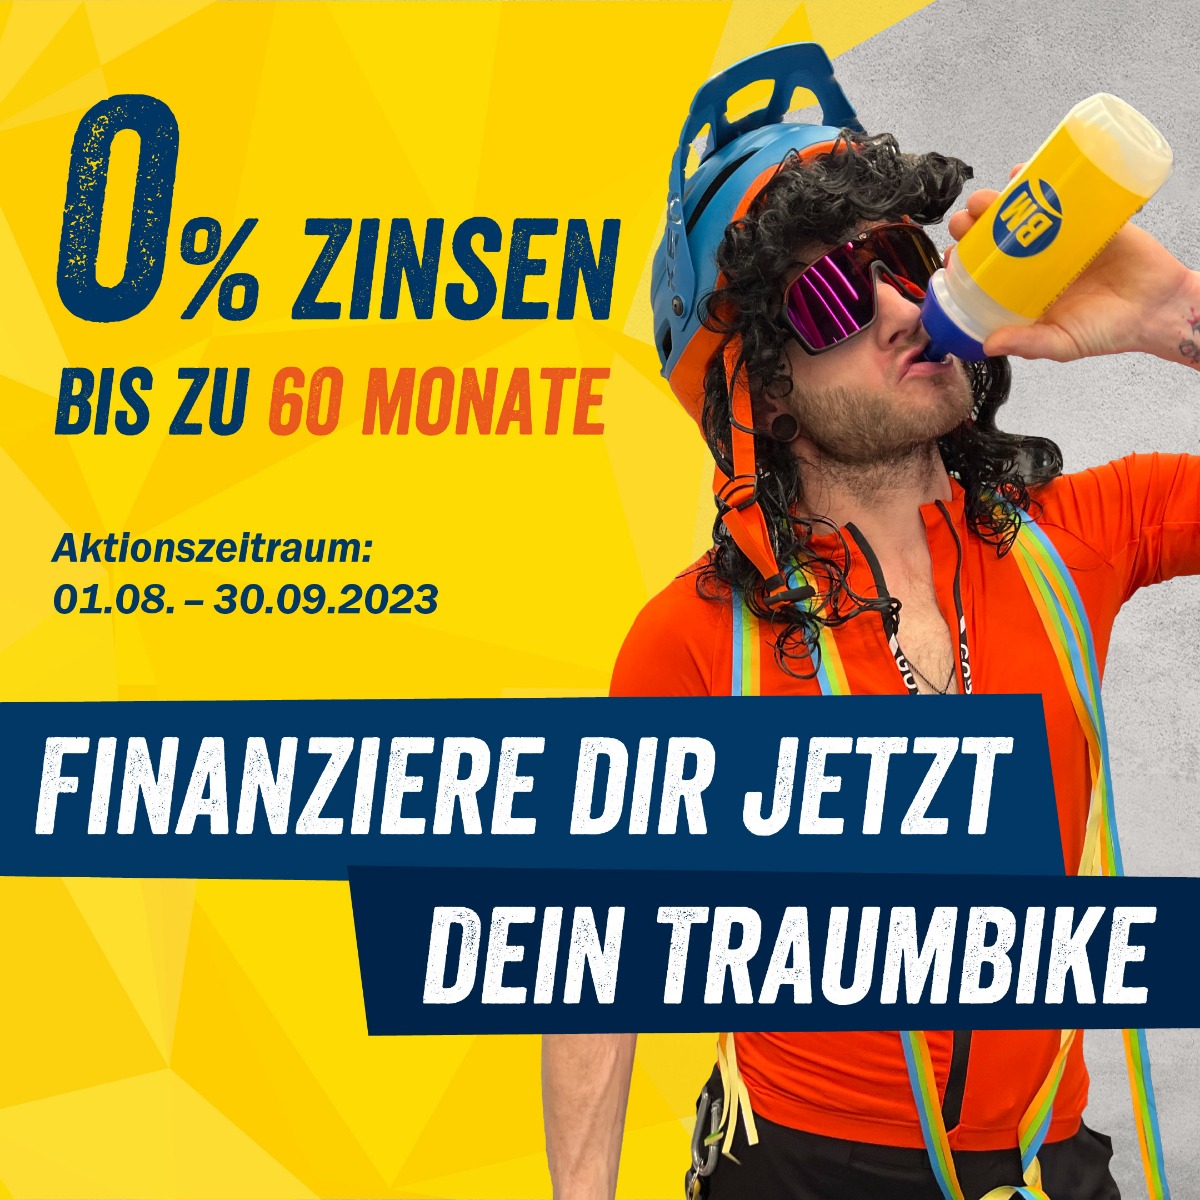 0% Fahrrad Finanzierung bei der Bike Market GmbH